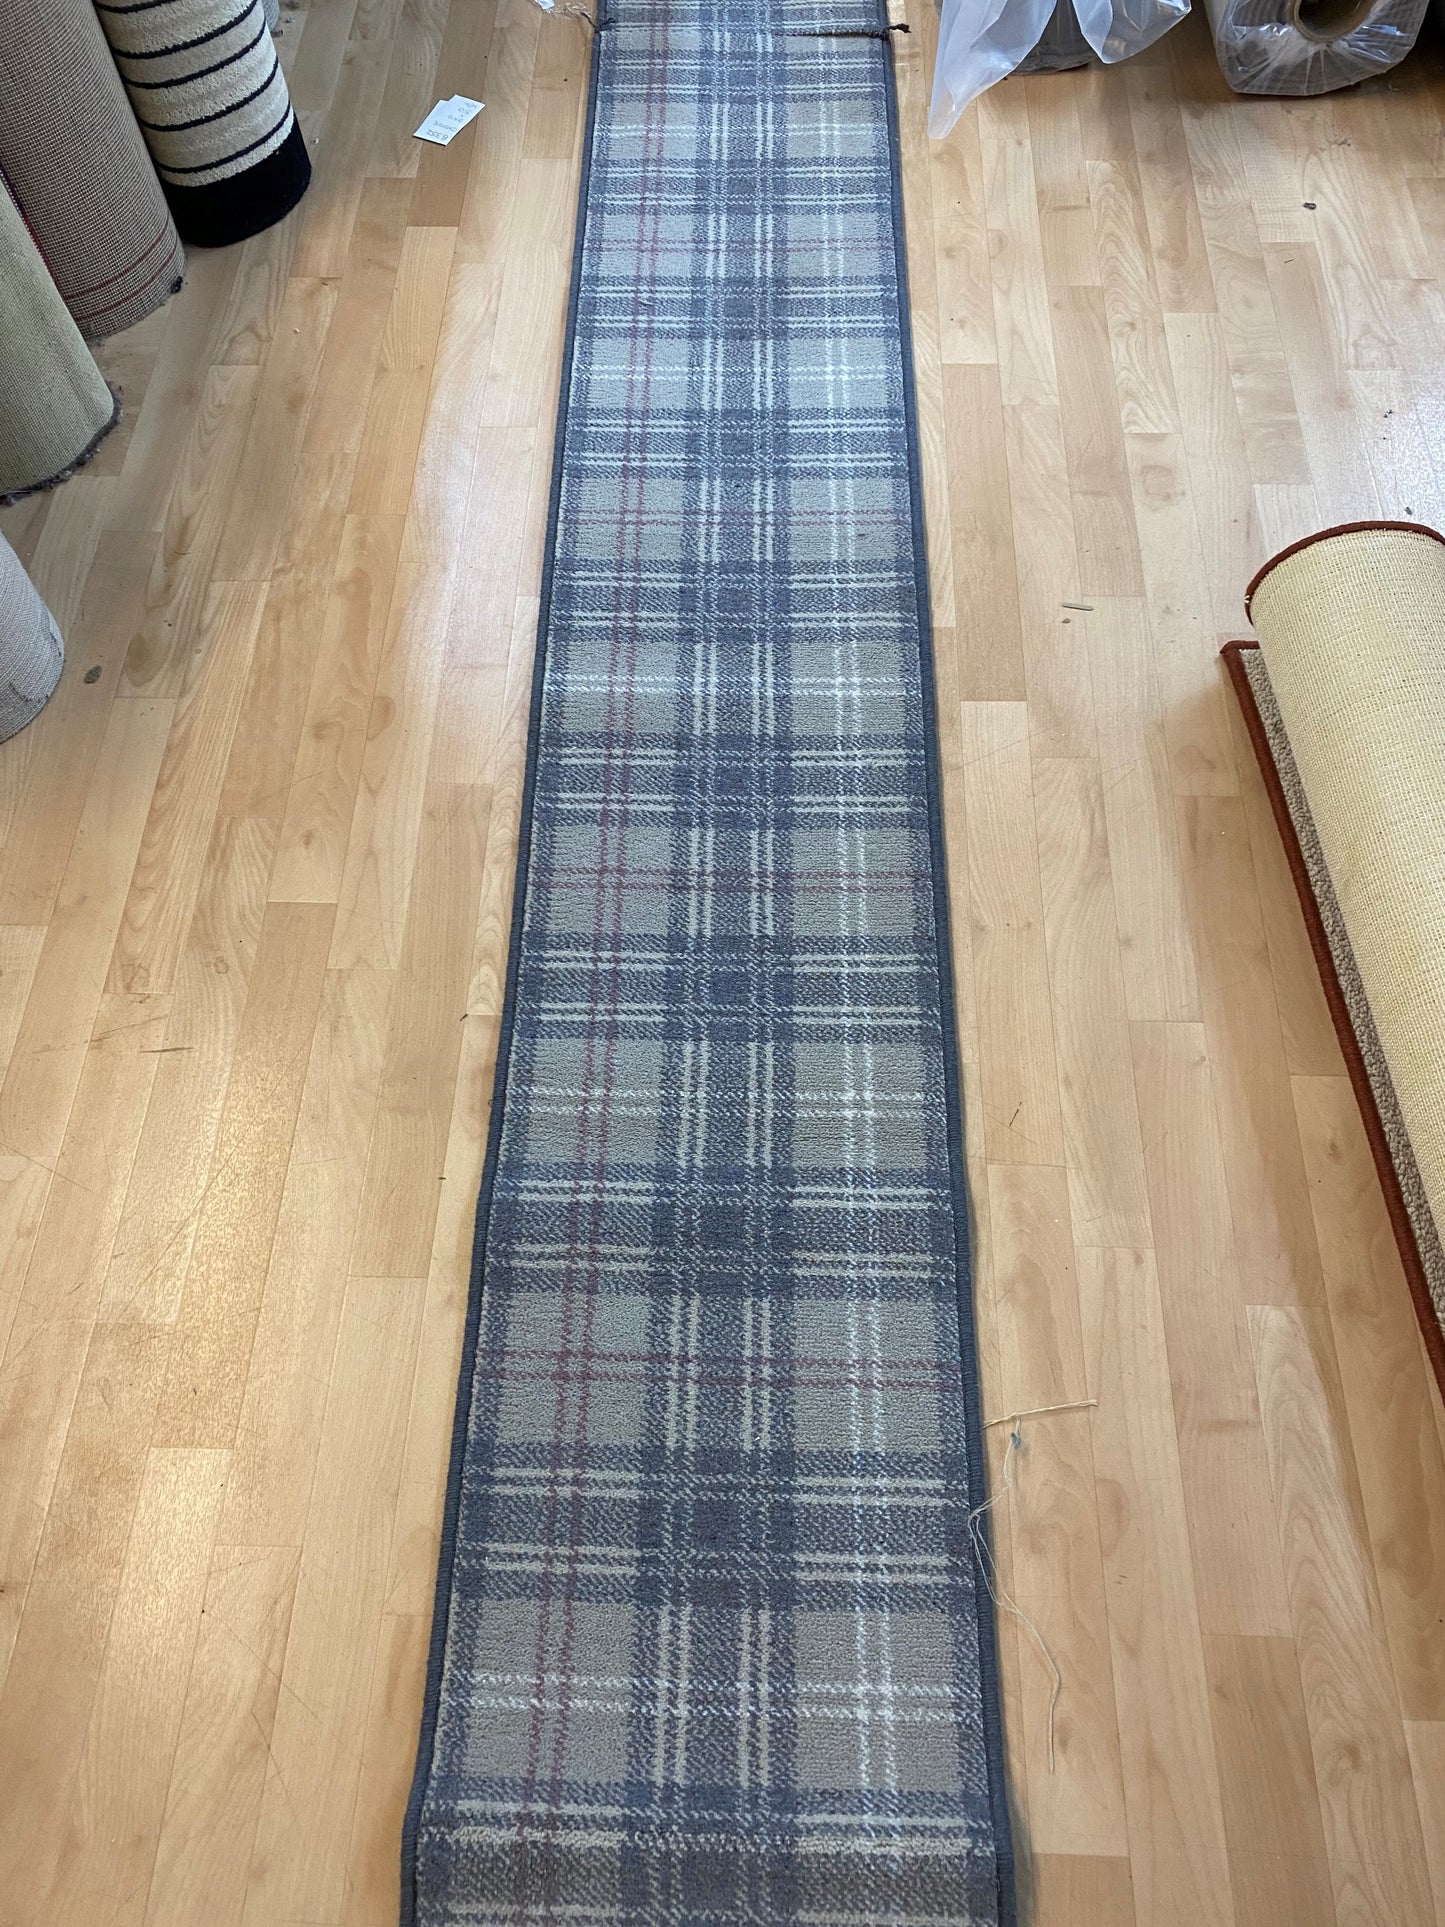 Ulster Carpets Braeburn Estuary Stair Runner 5.10m x 16" (41cm) wide